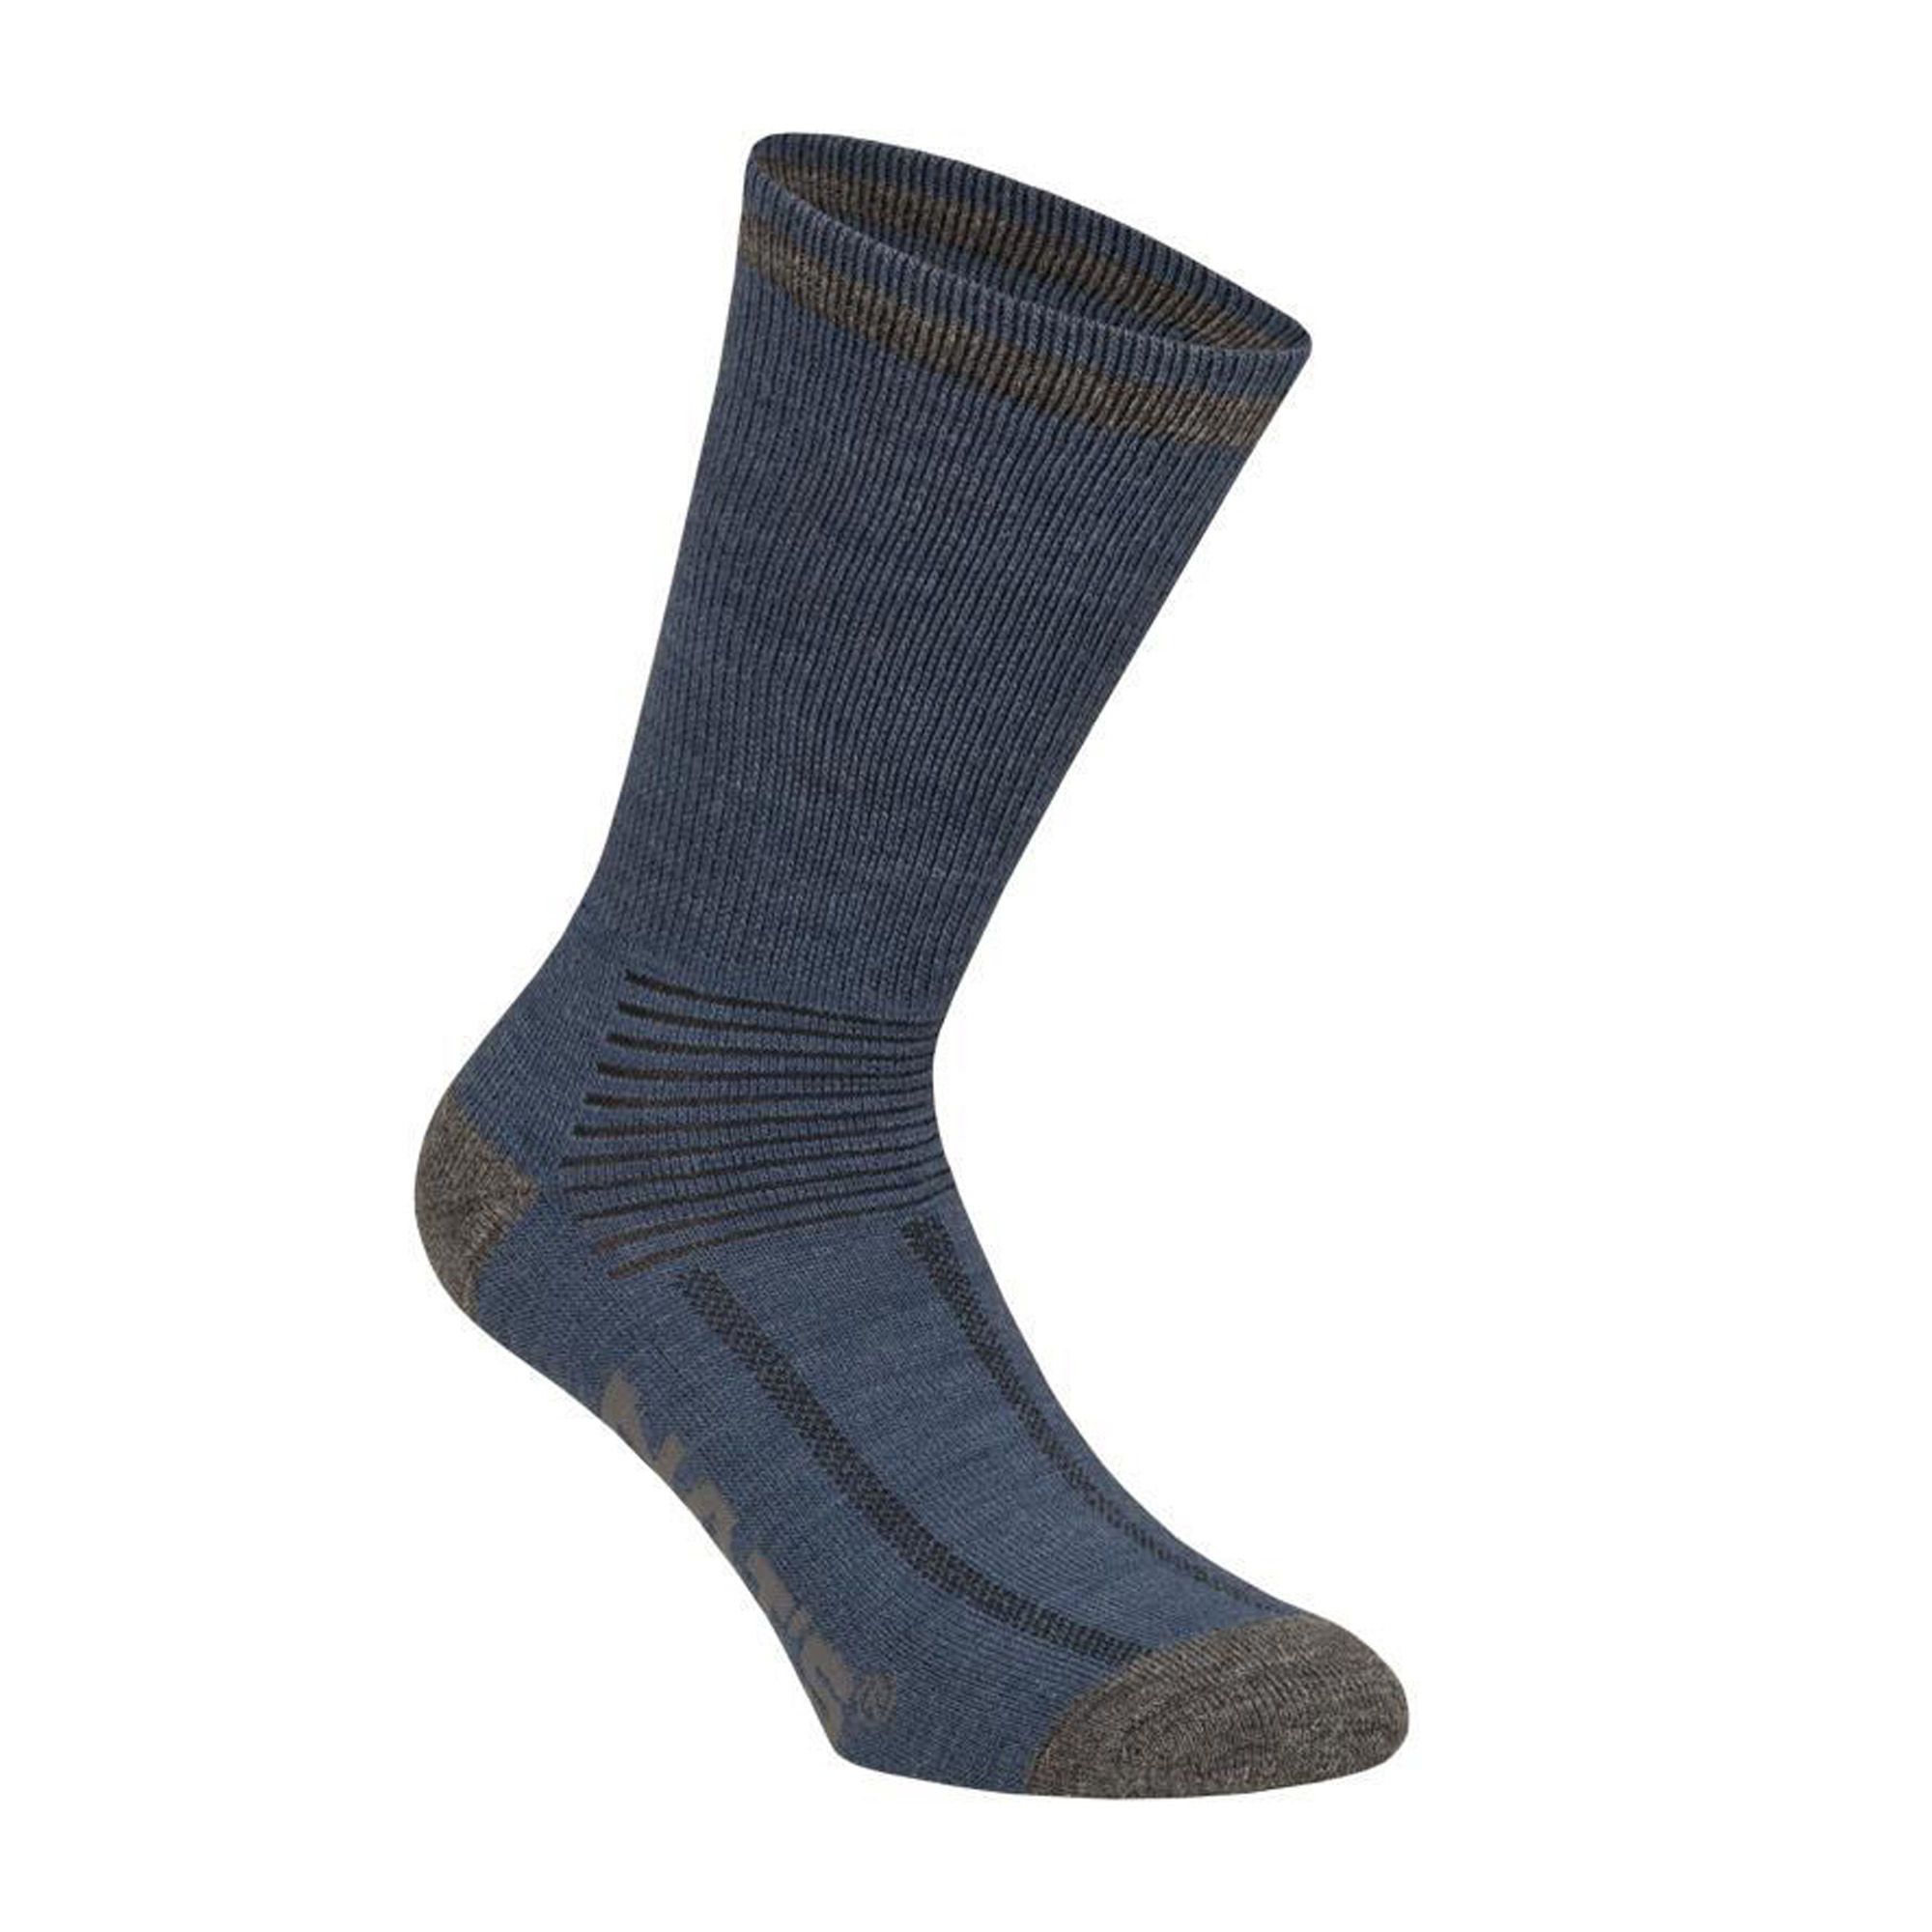 3 pairs of merino socks per pack from NAT'S